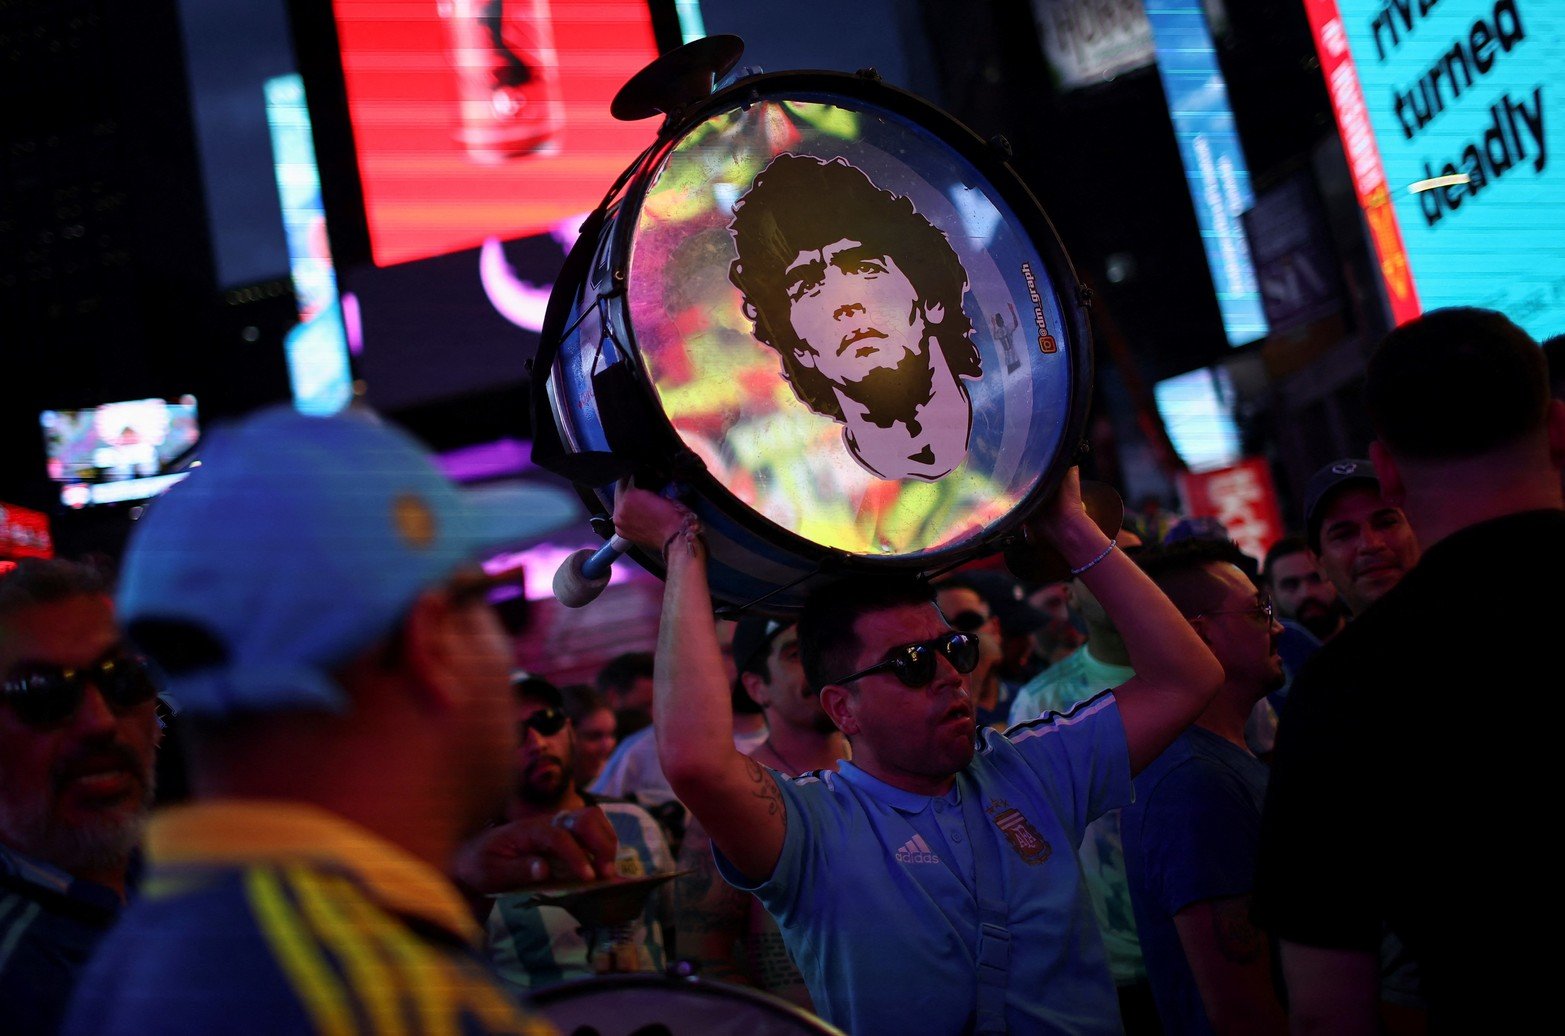 Los aficionados al fútbol argentino se reúnen en Times Square mientras animan a su equipo, en la ciudad de Nueva York, EE.UU.